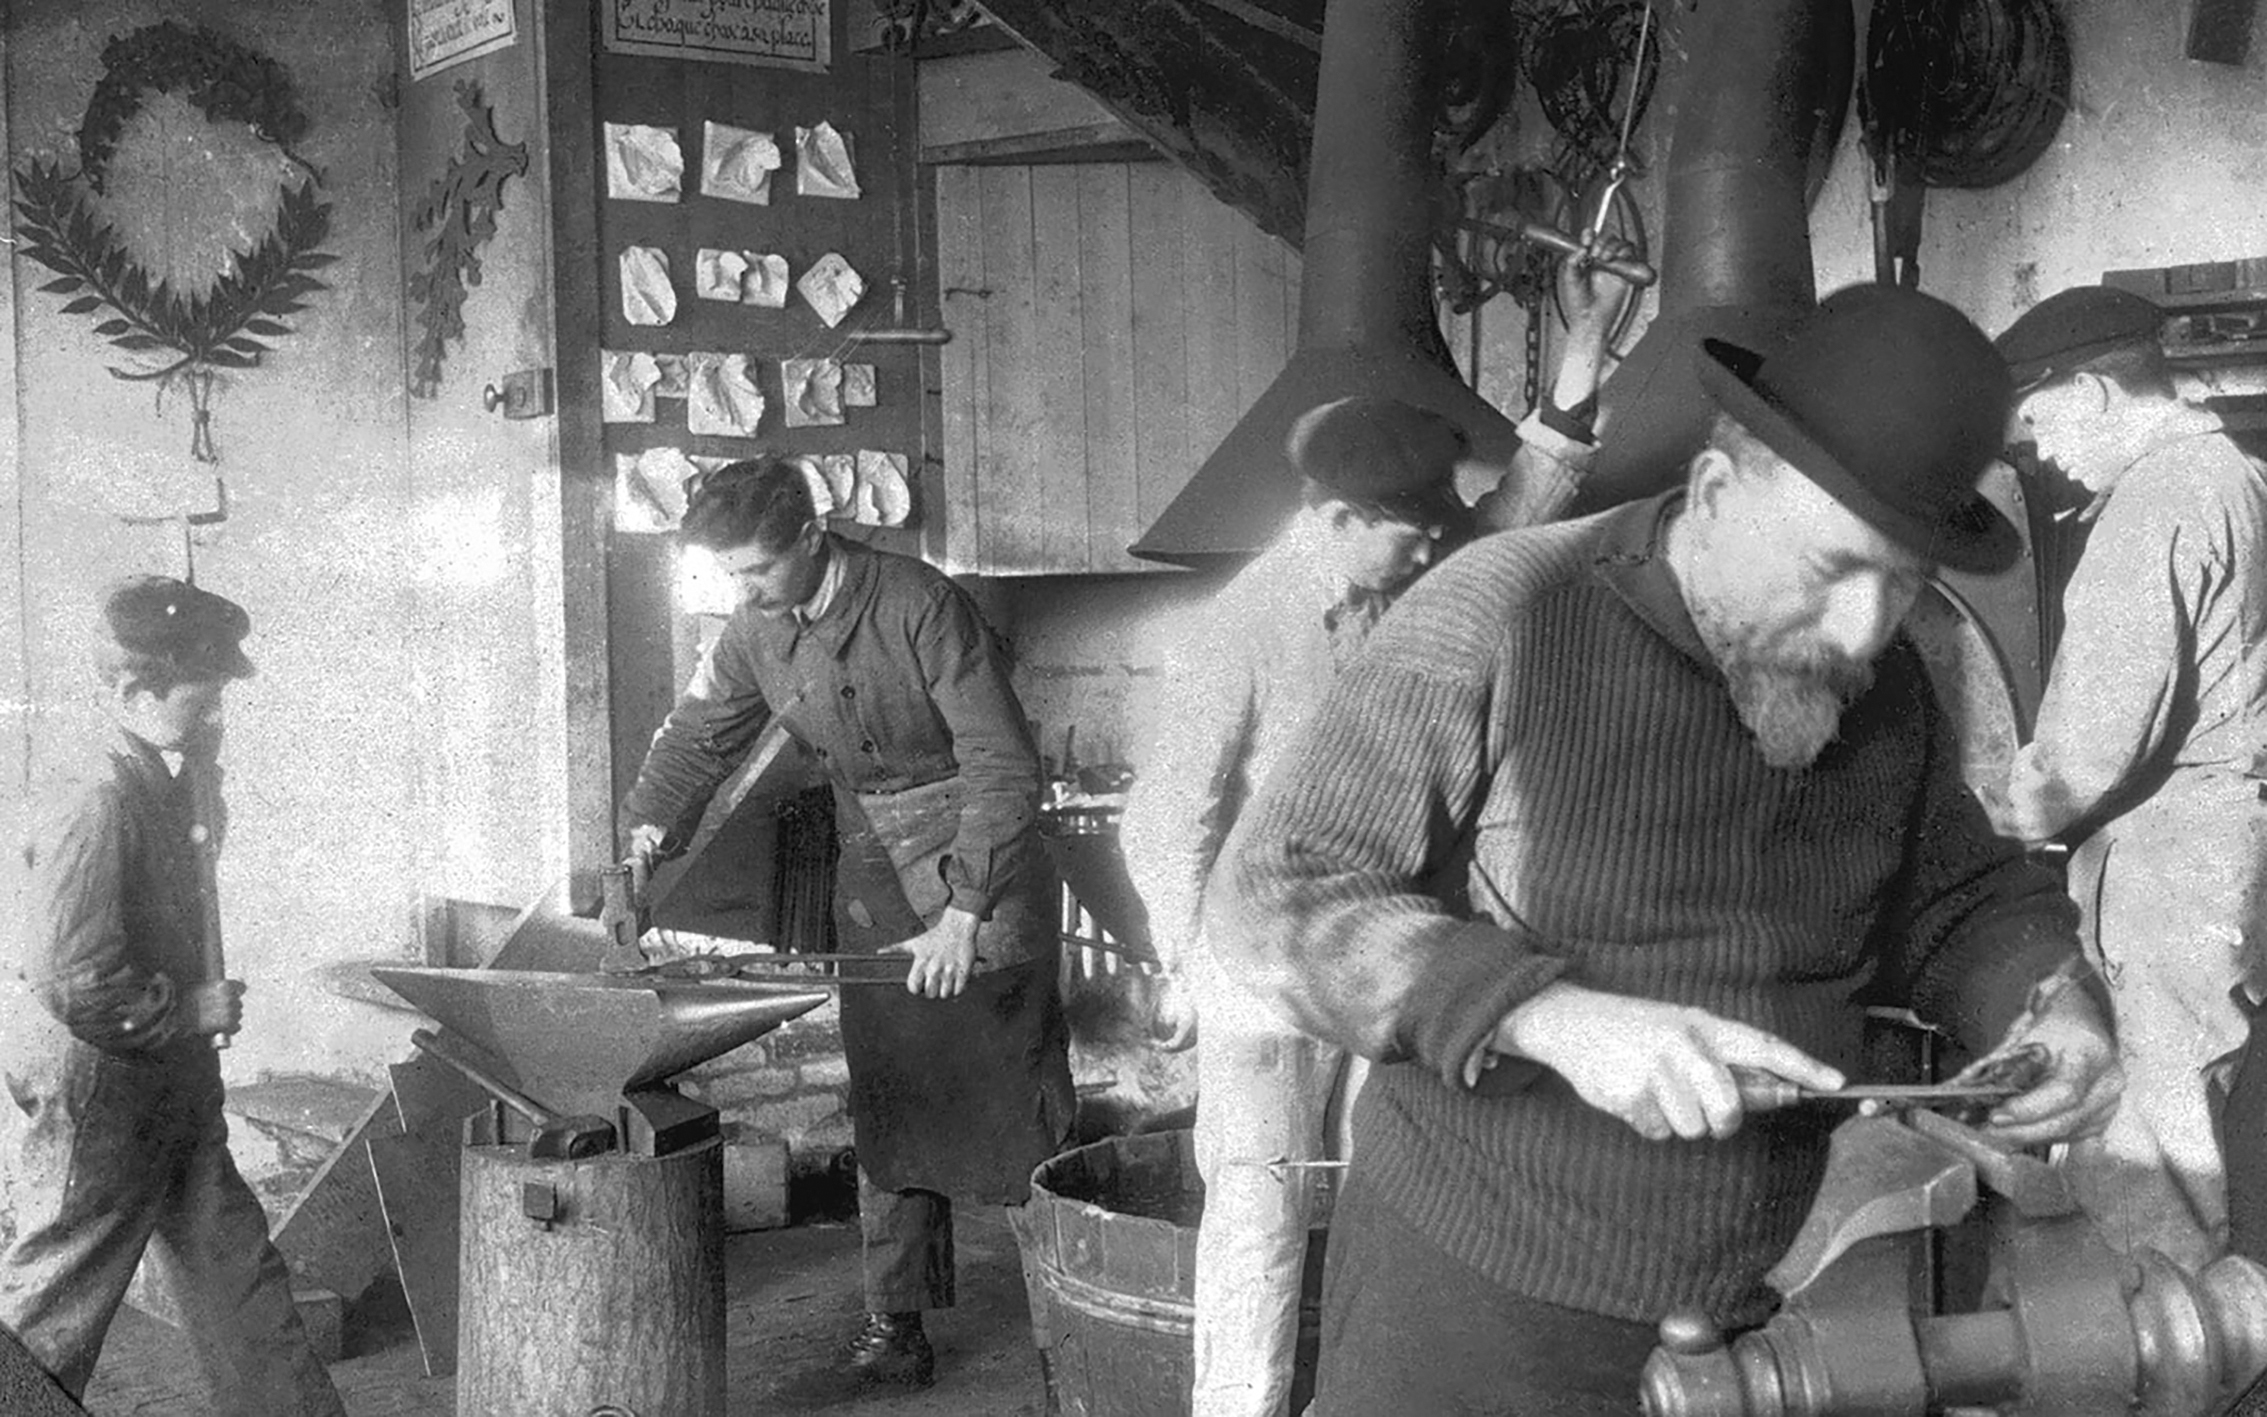 Jean Prouvé during his apprenticeship with Émile Robert, Enghien-les-Bains, c. 1917.